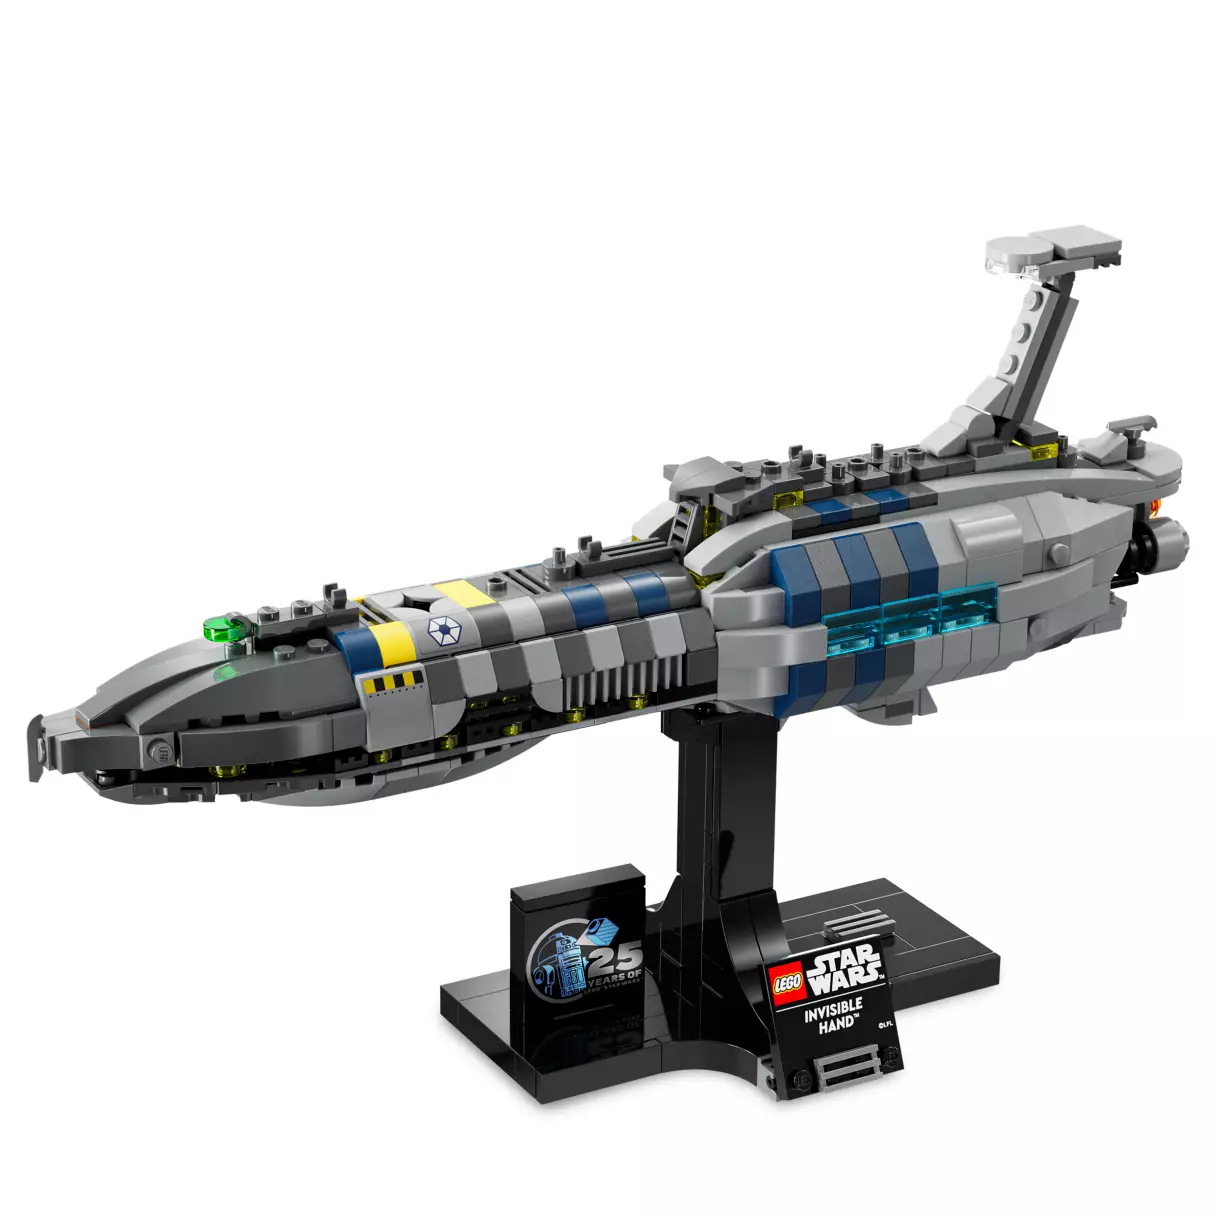 ROTS Invisible Hand Starship Lego Set 3